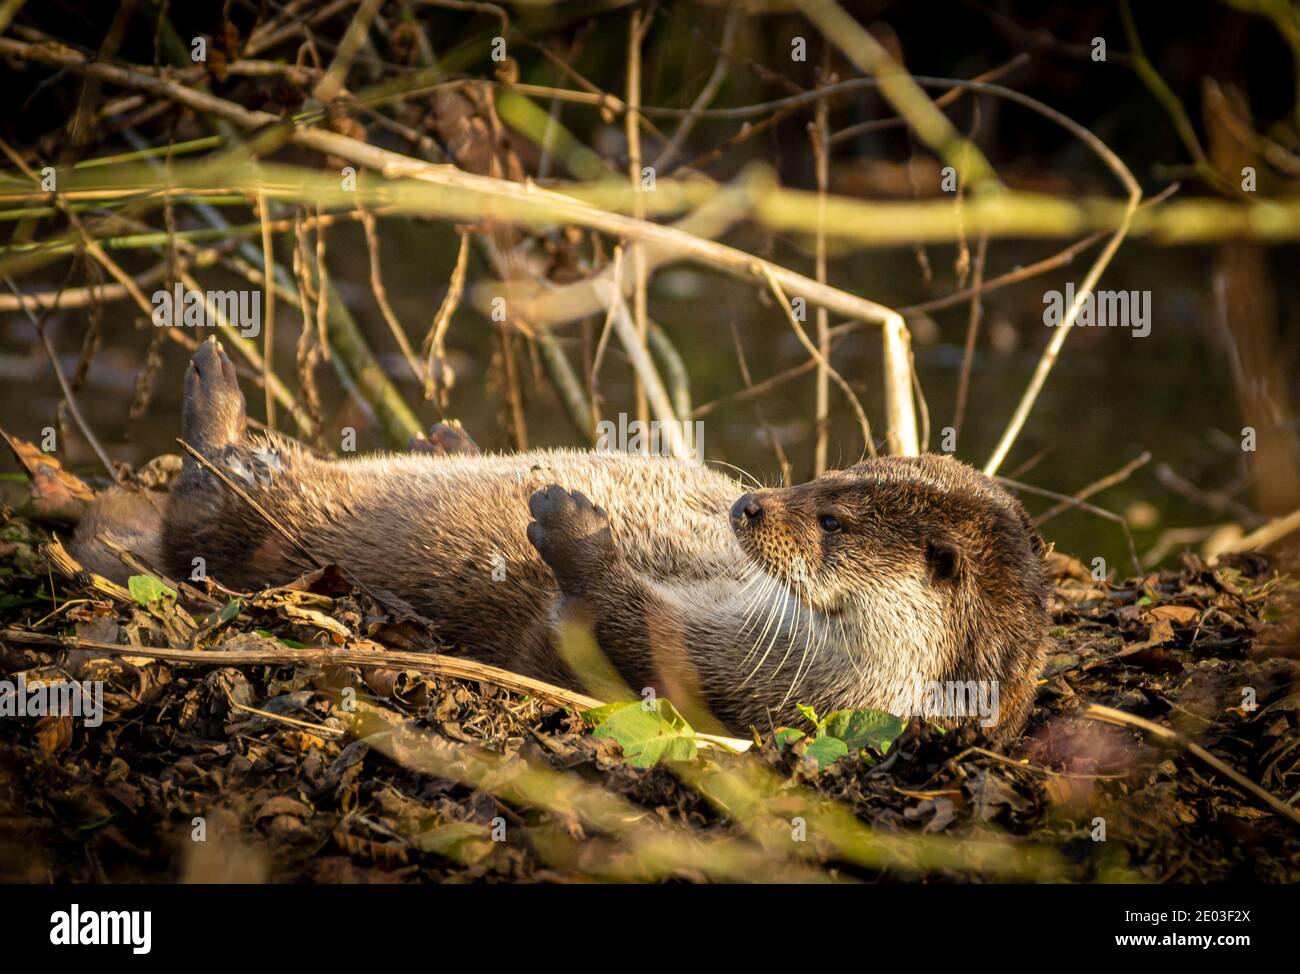 Europe Wild Otter se prélasser dans le soleil d'hiver Cliff Norton Alamy Banque D'Images